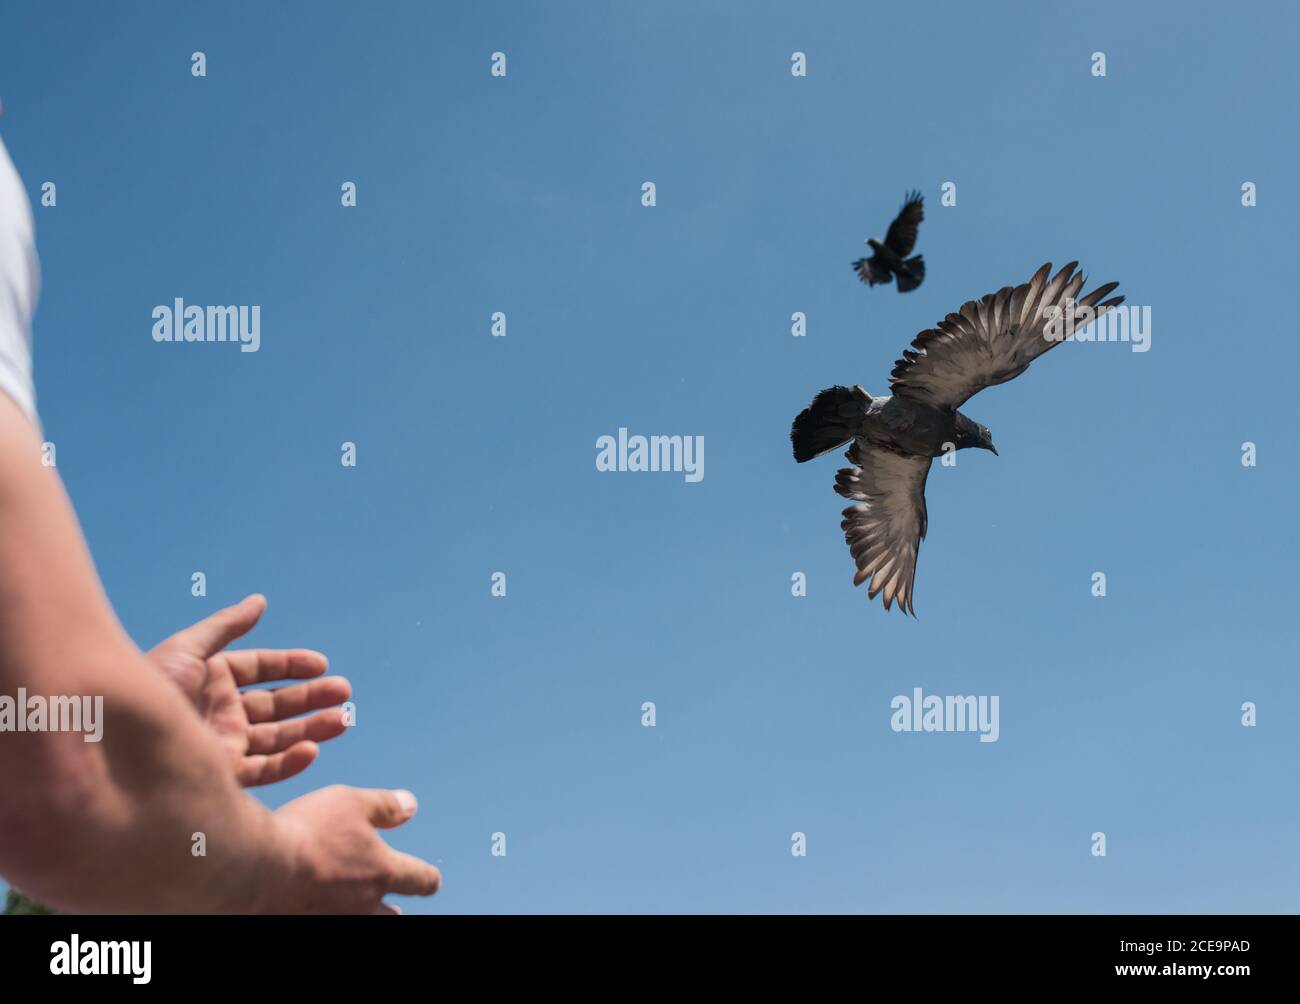 Mains mâles libérant deux tourterelles ou pigeons dans le ciel. L'image symbolique de la liberté, de la libération, et l'égalité Banque D'Images